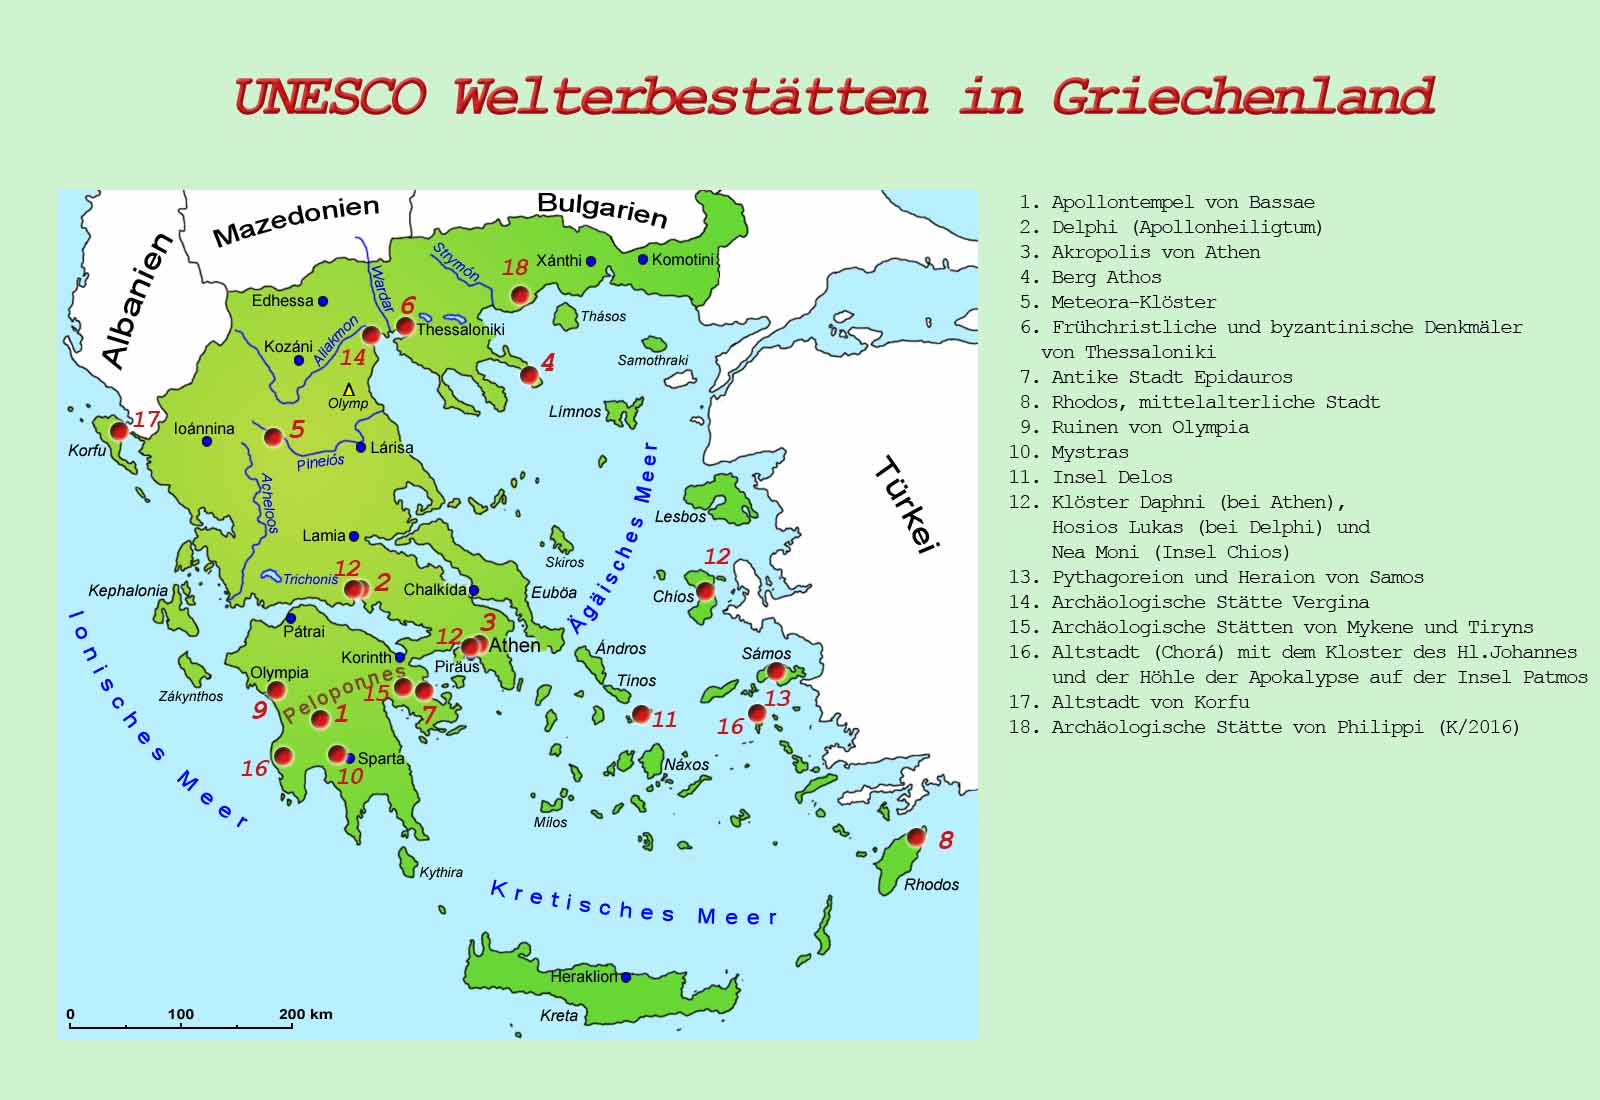 Griechenland: UNESCO-Welterbestätten | Länder | Griechenland | Goruma